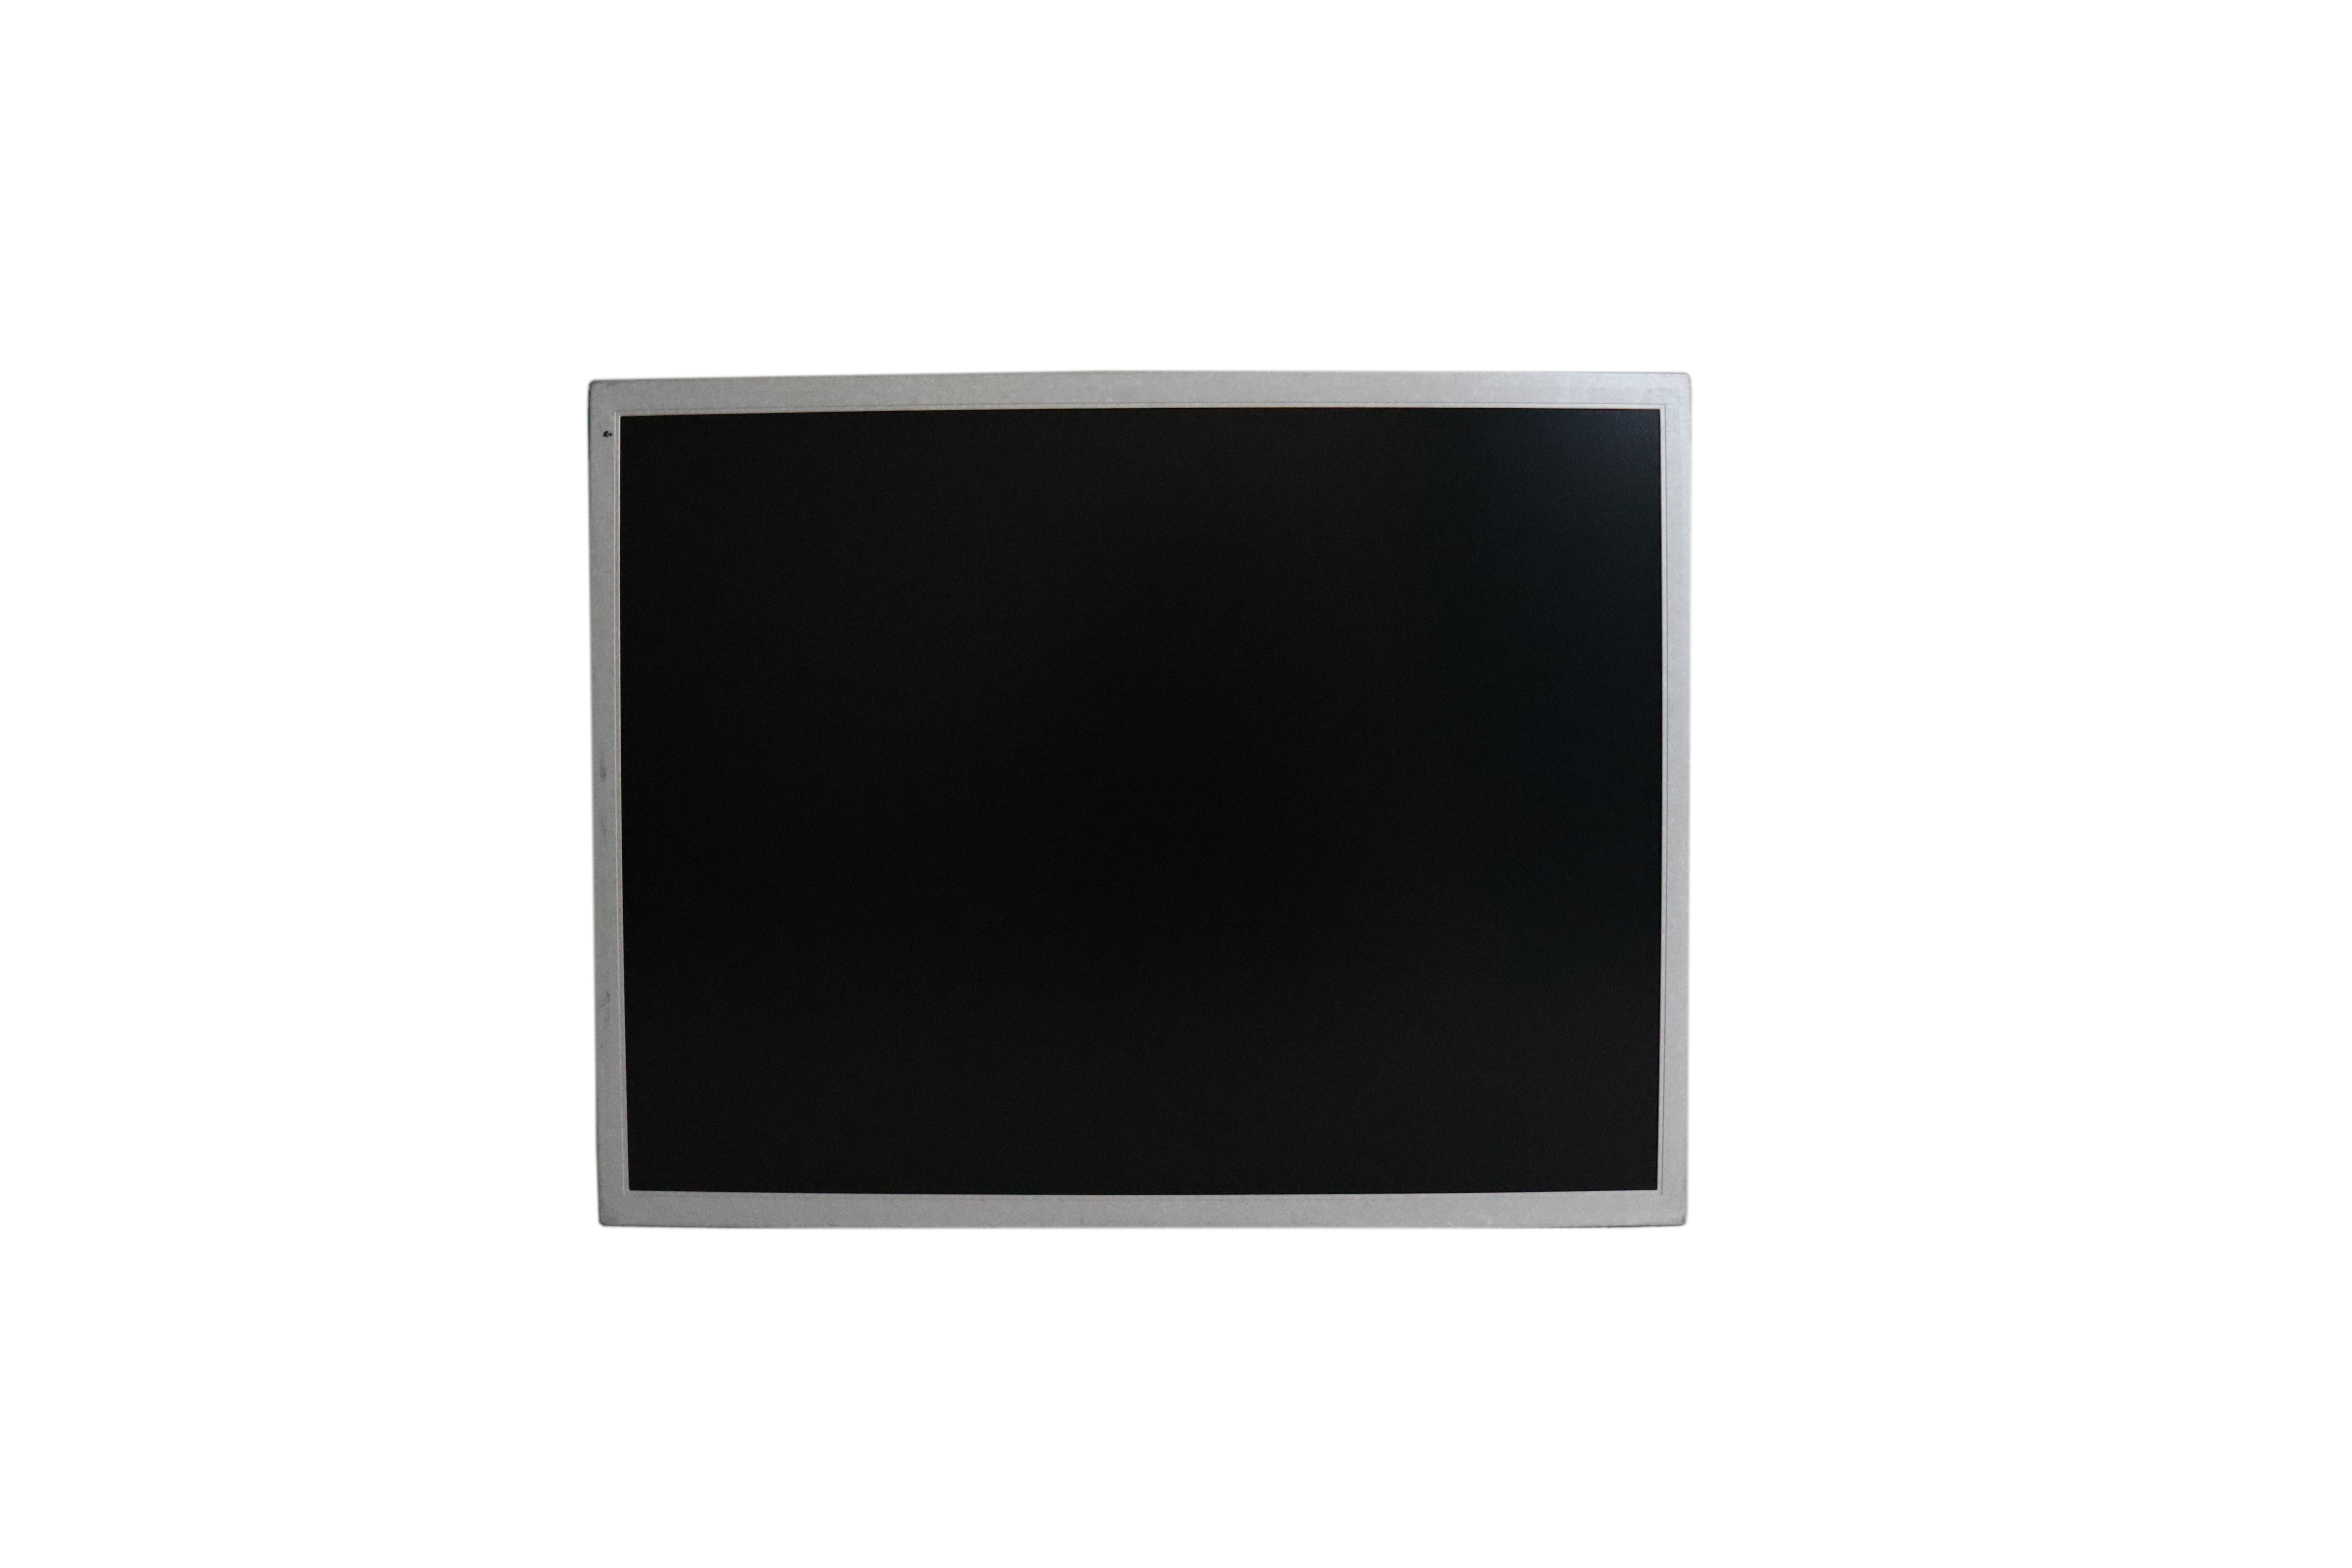 Brand new industry grade 15 inch high brightness lcd panel